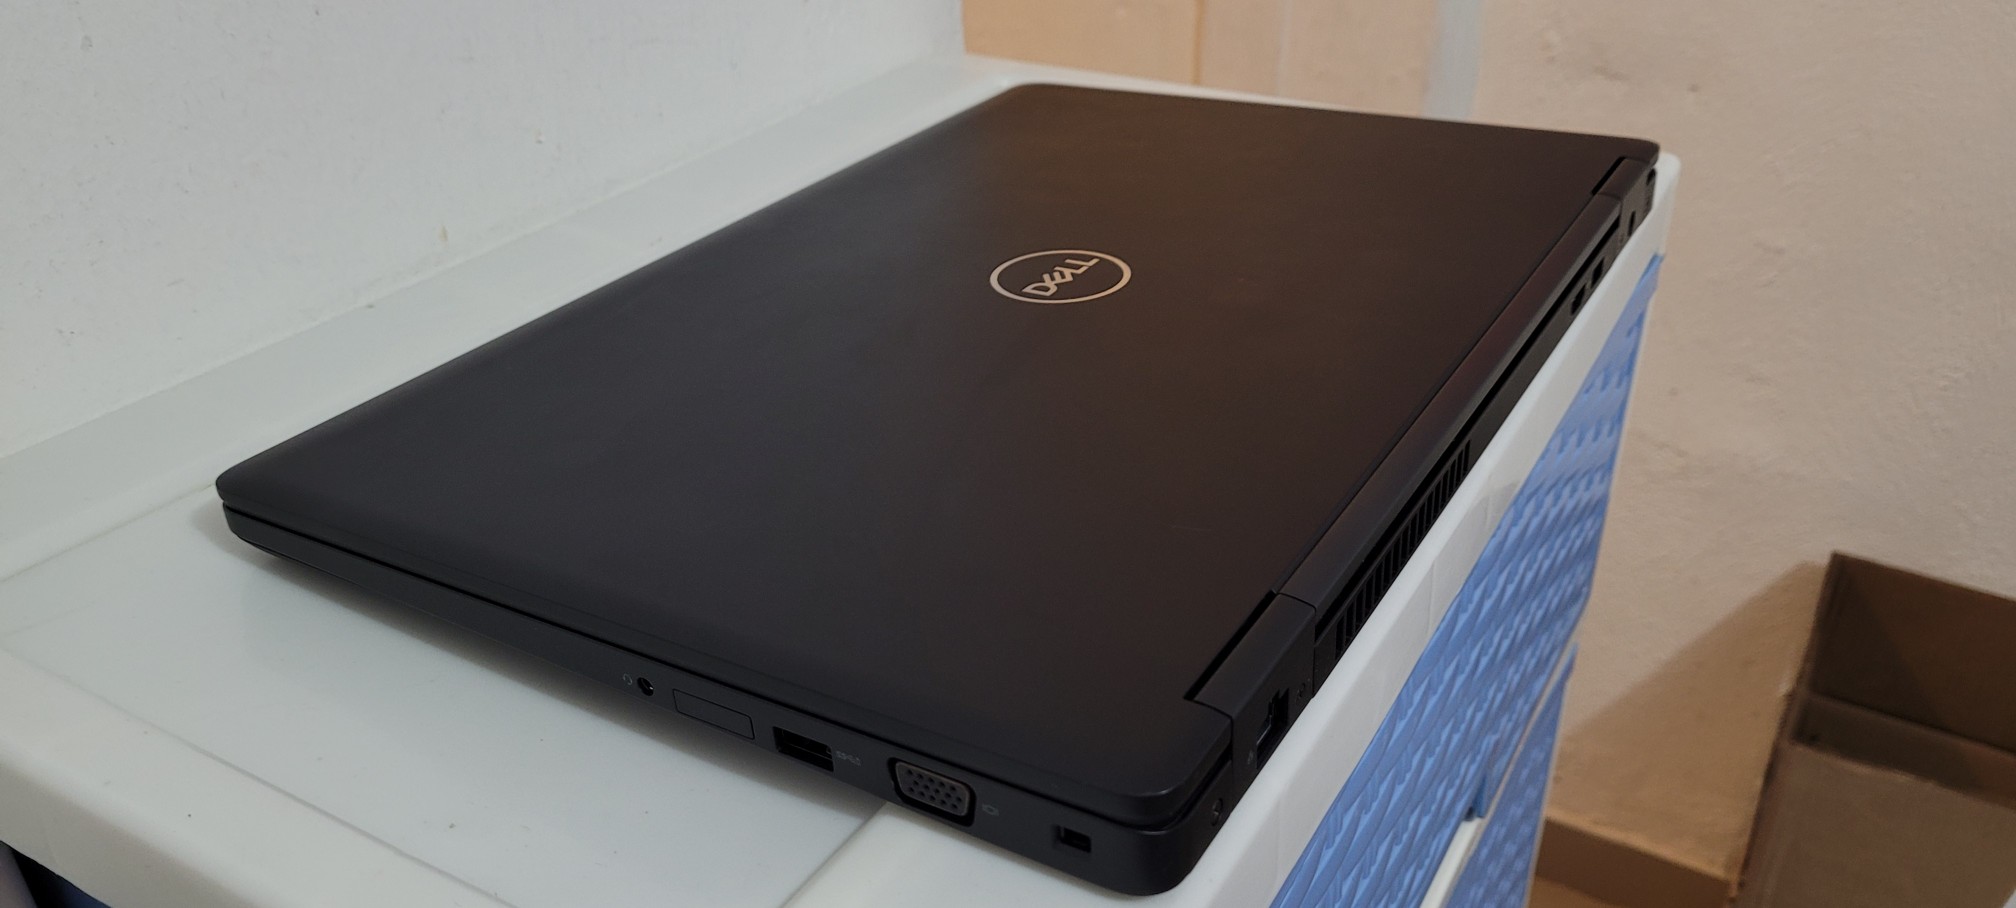 computadoras y laptops - Dell 5570 17 Pulg Core i5 6ta Ram 8gb Disco 128gb Y 500gb hdmi full 2